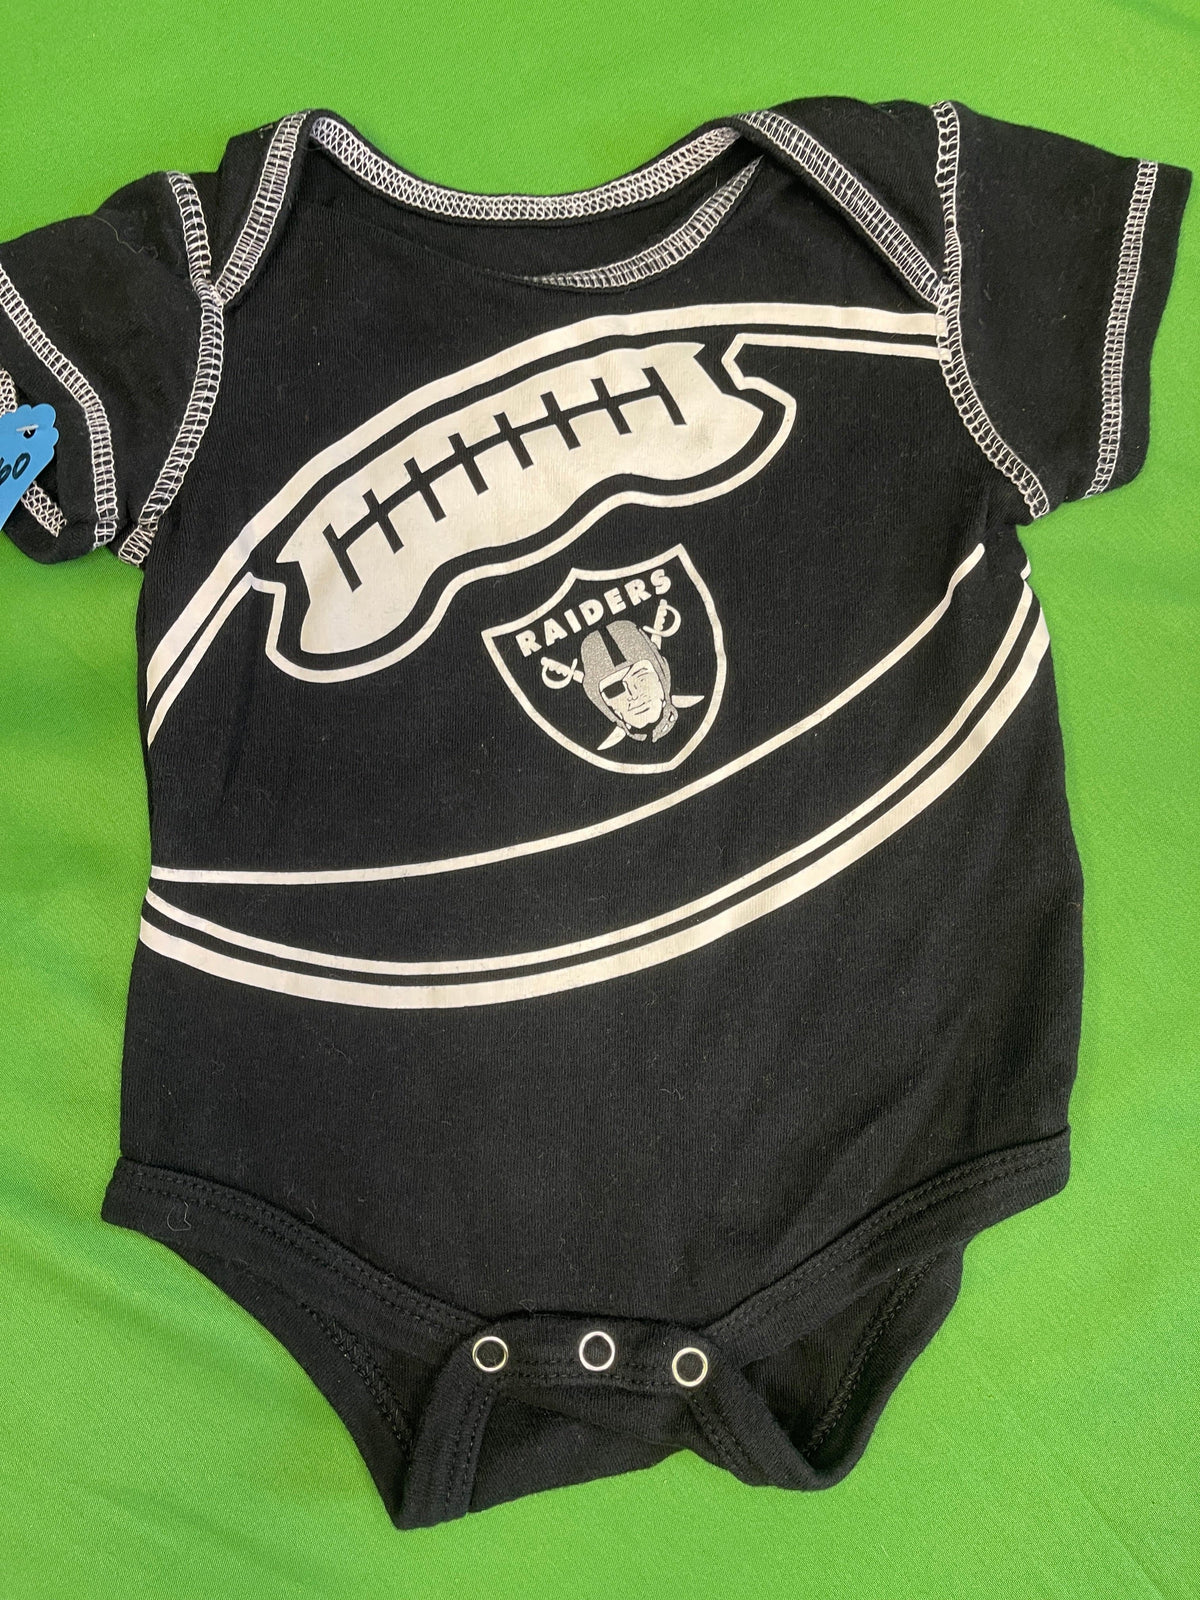 NFL Las Vegas Raiders Infant Bodysuit/Vest 3-6 Months